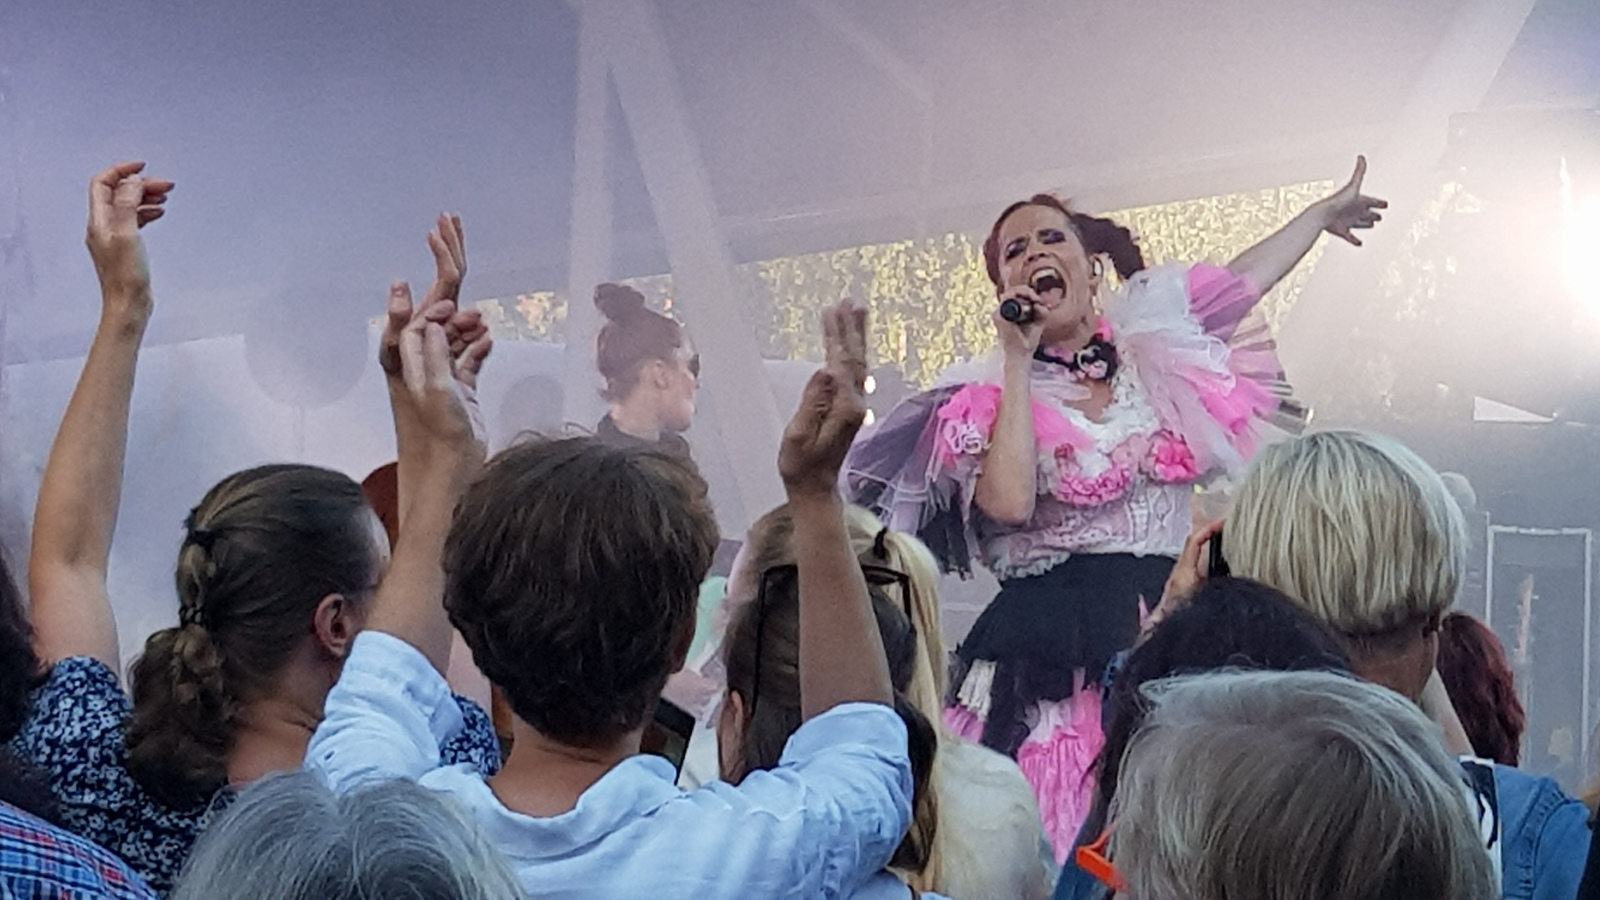 Kuvassa on Maija Vilkkumaa seisovan yleisön edessä laulamassa vahvalla ilmeellä.  Hänellä on valkoisen punakirjava puku, jossa on liuskamaiset kangaskaistallet. Taustalla on sinertävää valoa ja savua.